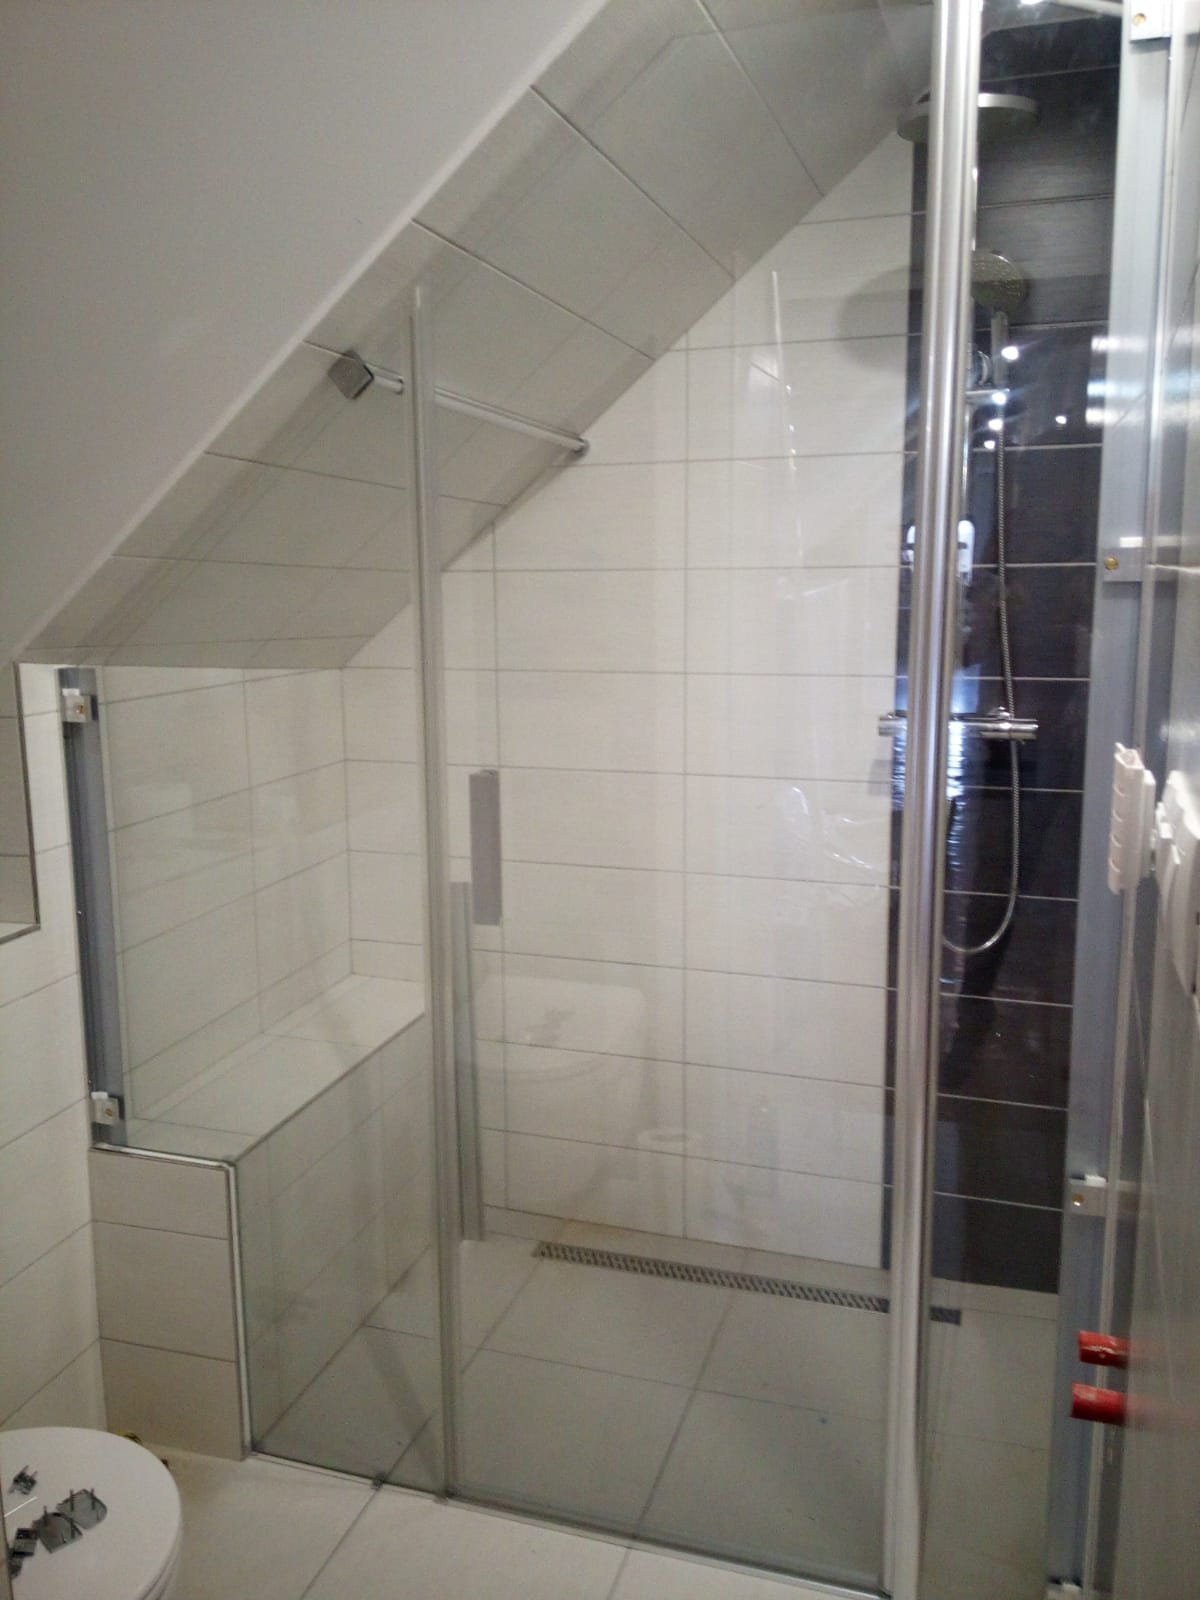 Zkosené sprchové dveře s ořezem skla na výklenek v průběhu instalace - bez nasazených krycích profilů